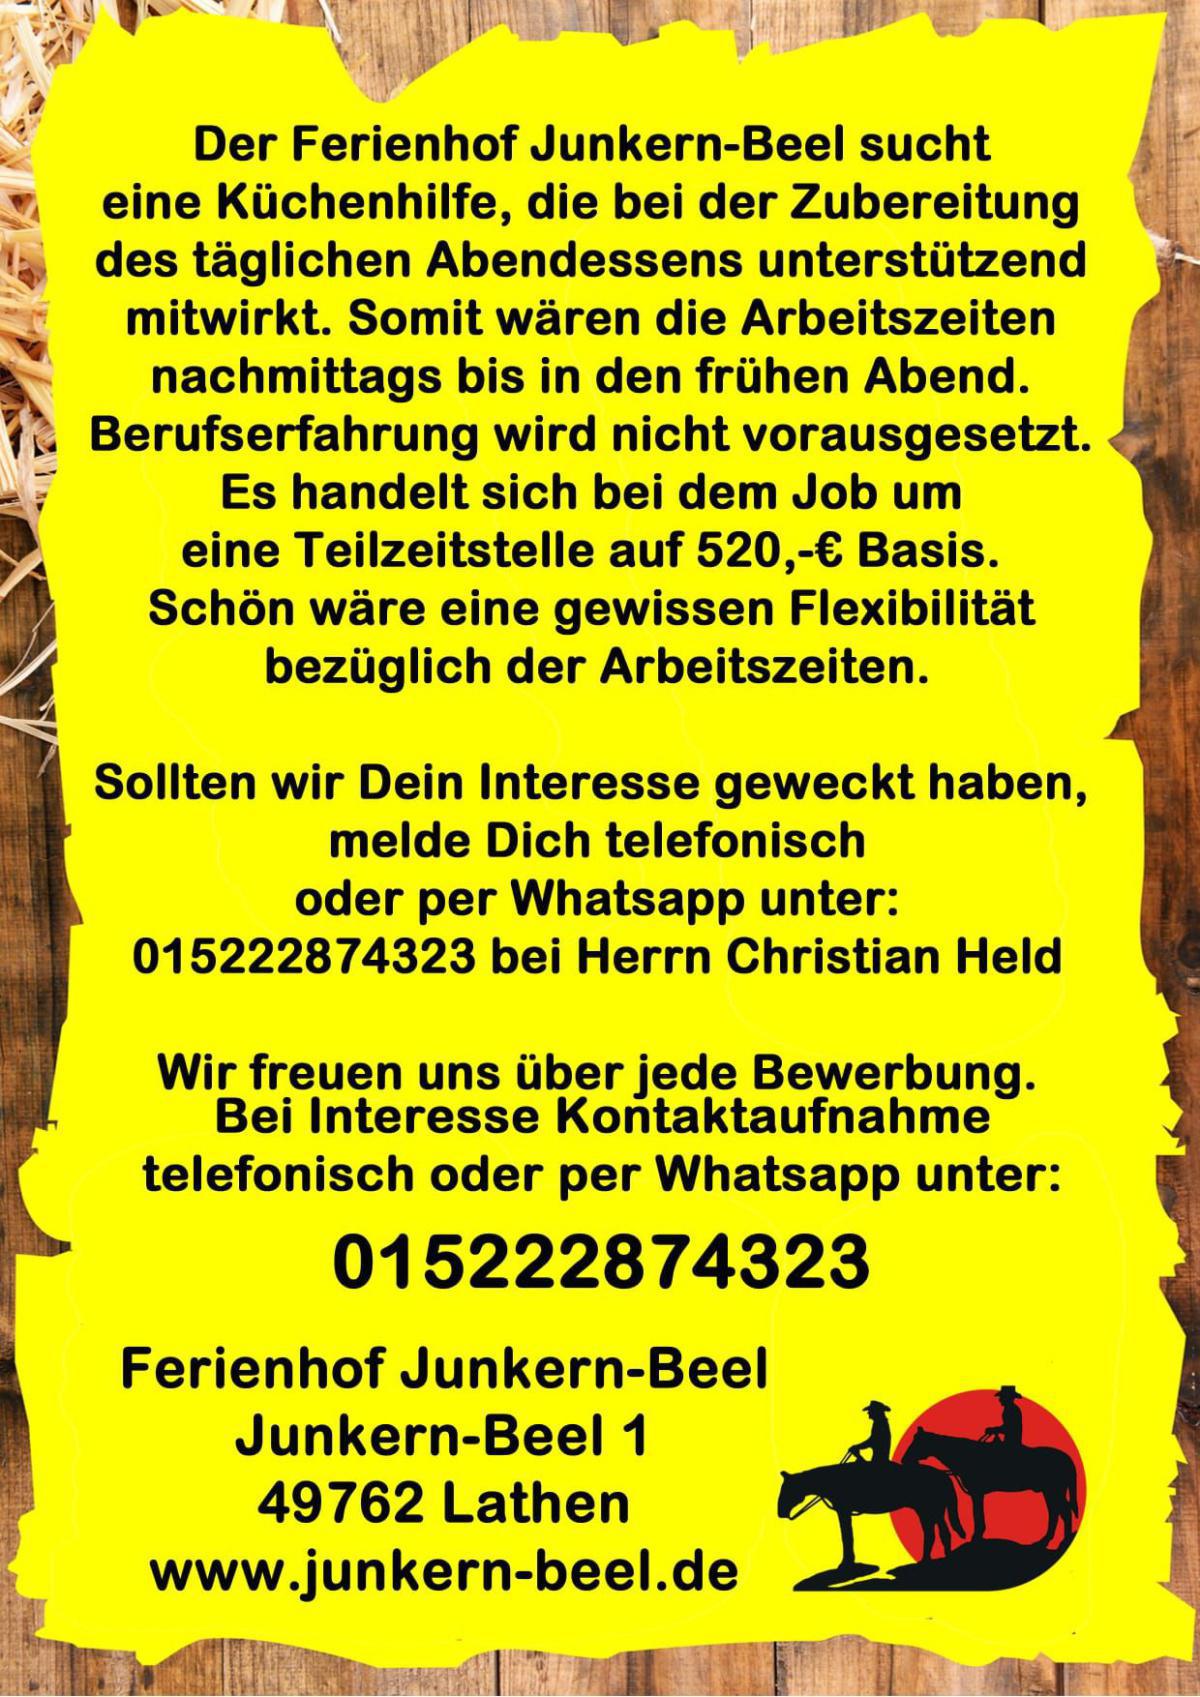 Reiterhof Junkern Beel sucht Mitarbeiter